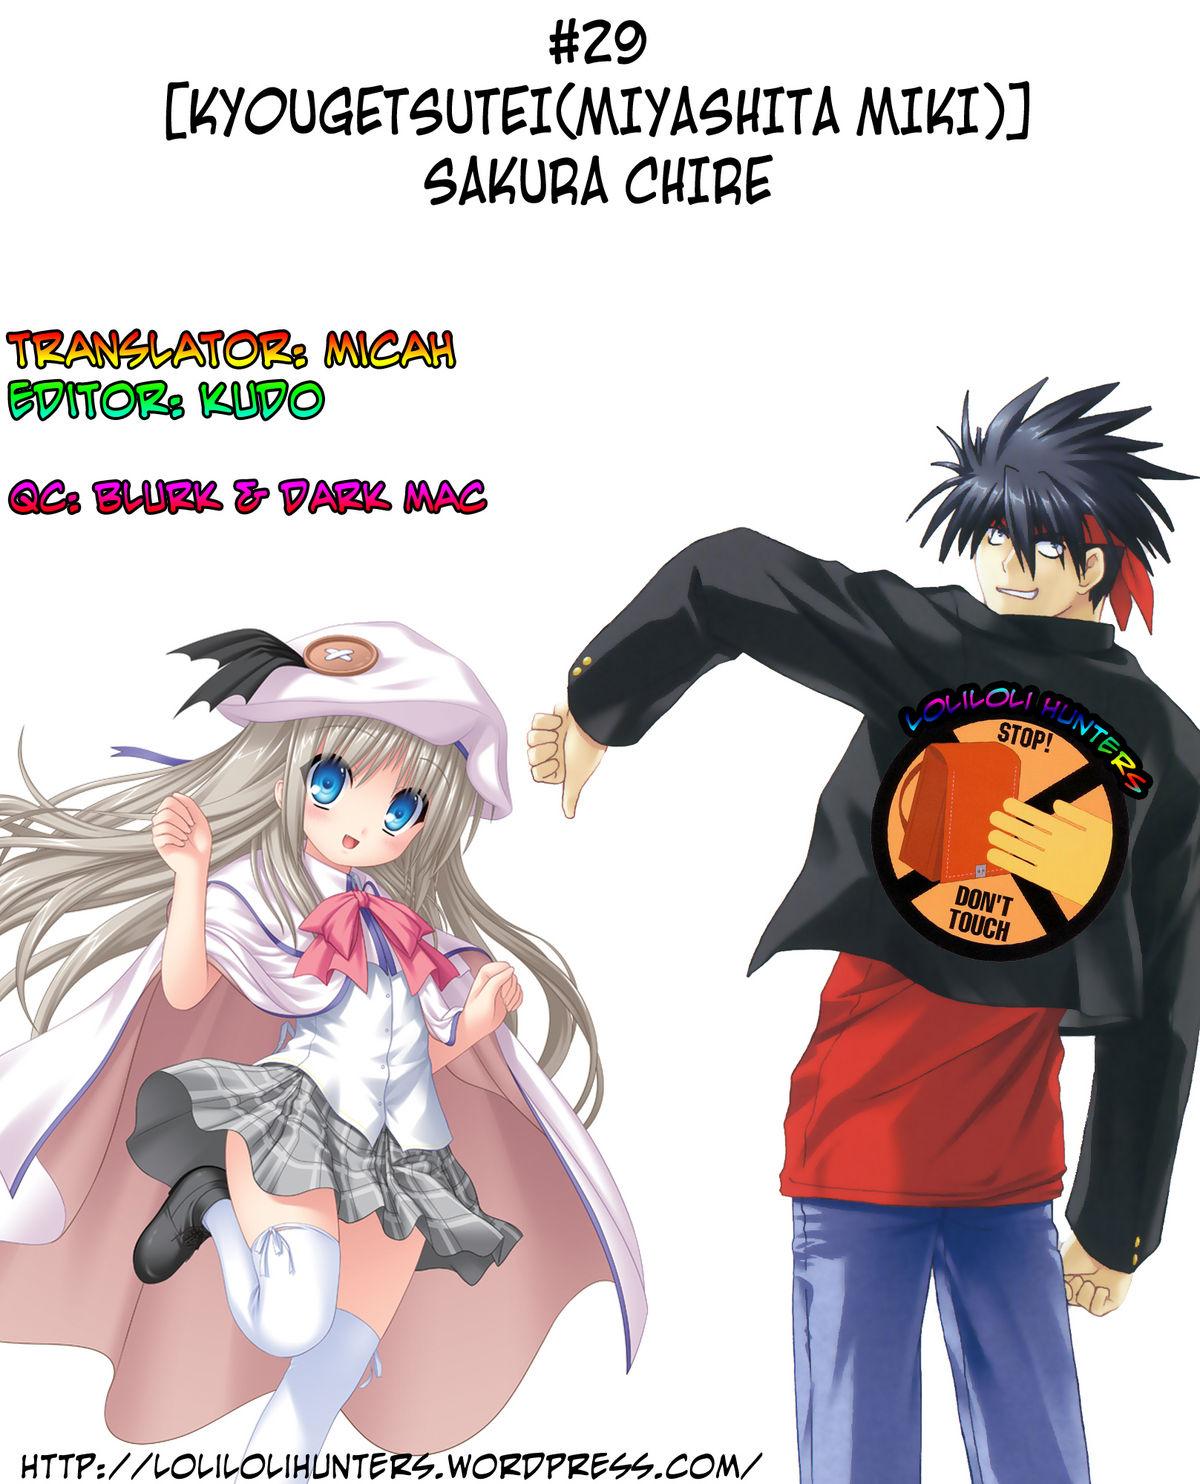 Movie Sakura Chire - Fate zero Culos - Page 26